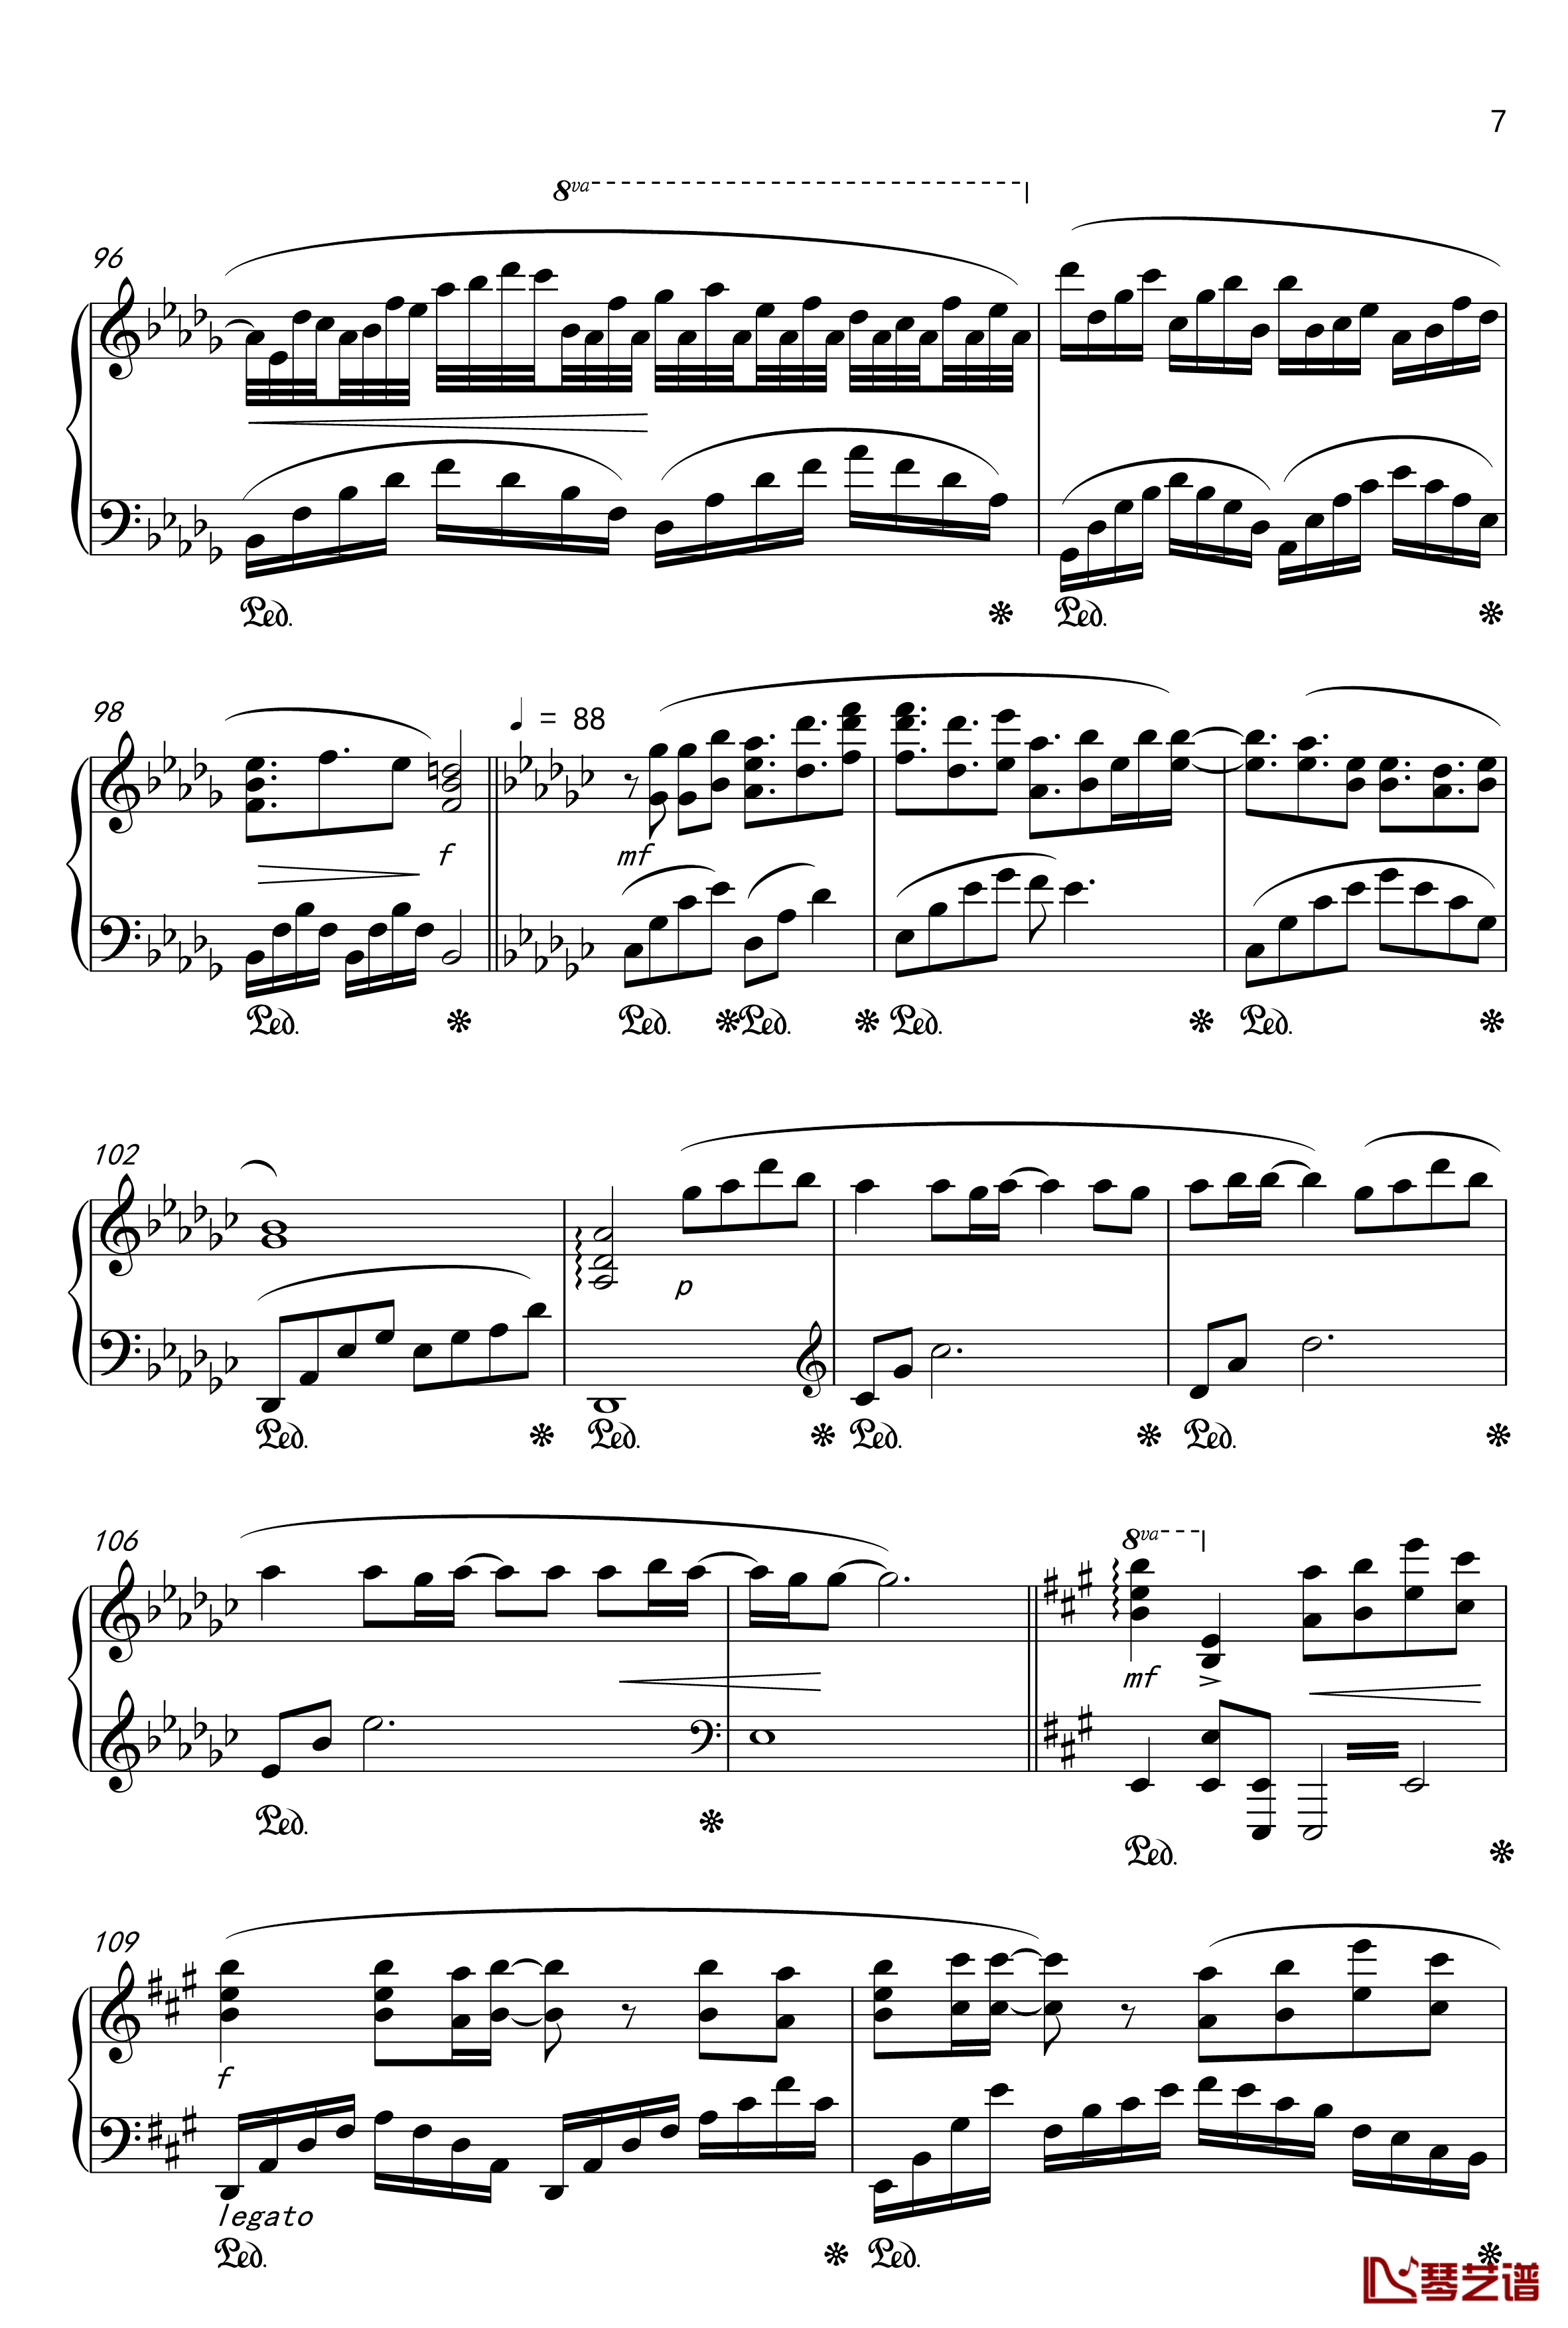 月夜に舞う恋の花-Piano Instrumental-钢琴谱-千の刃涛7